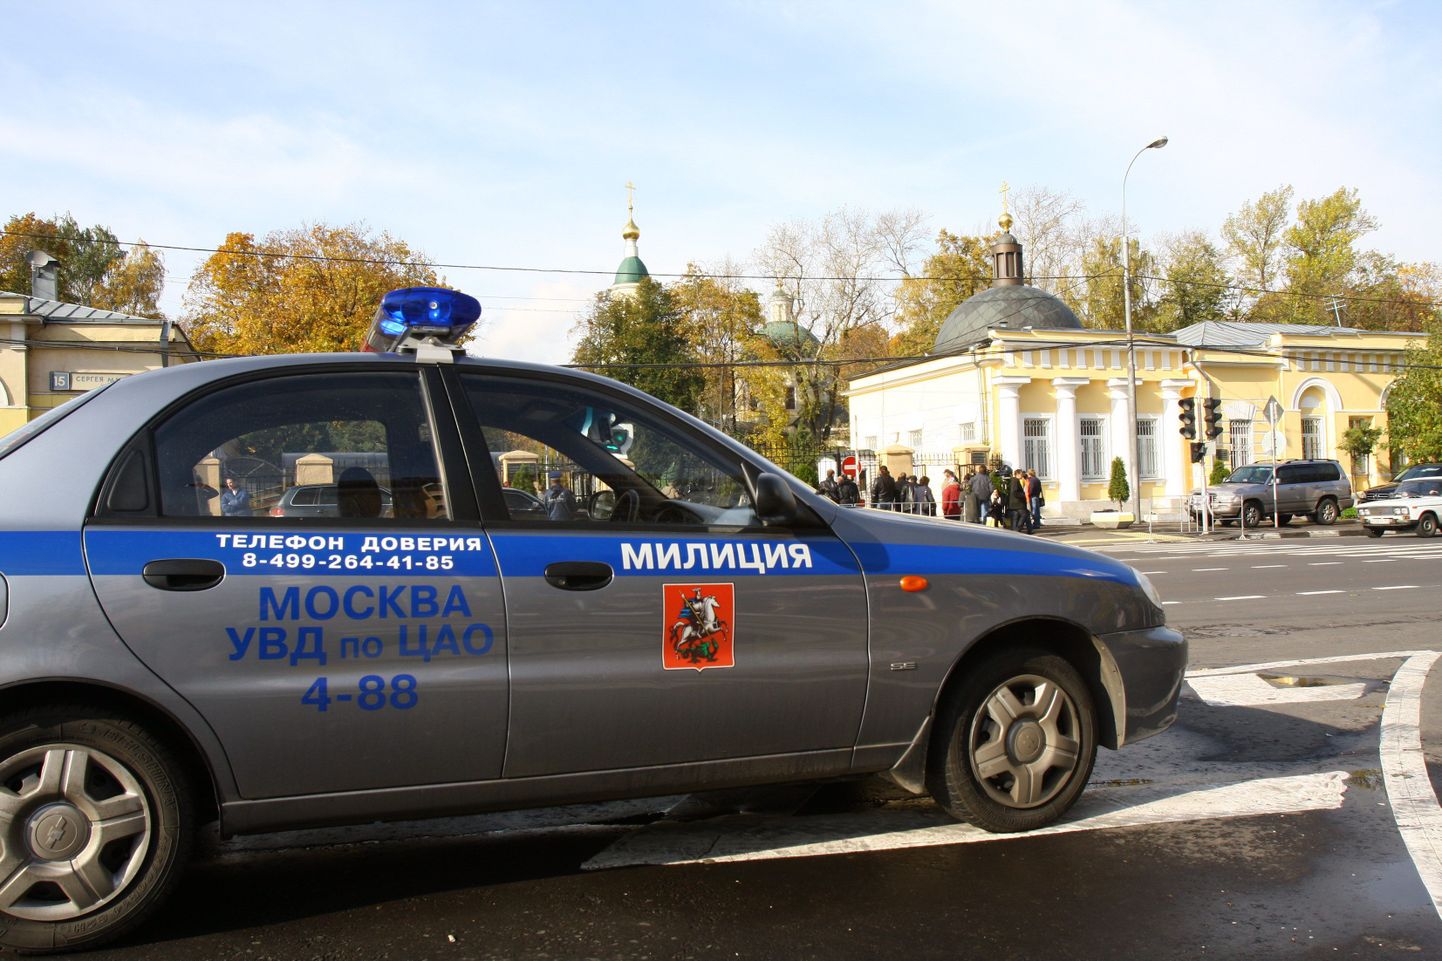 Moskva miilitsaauto